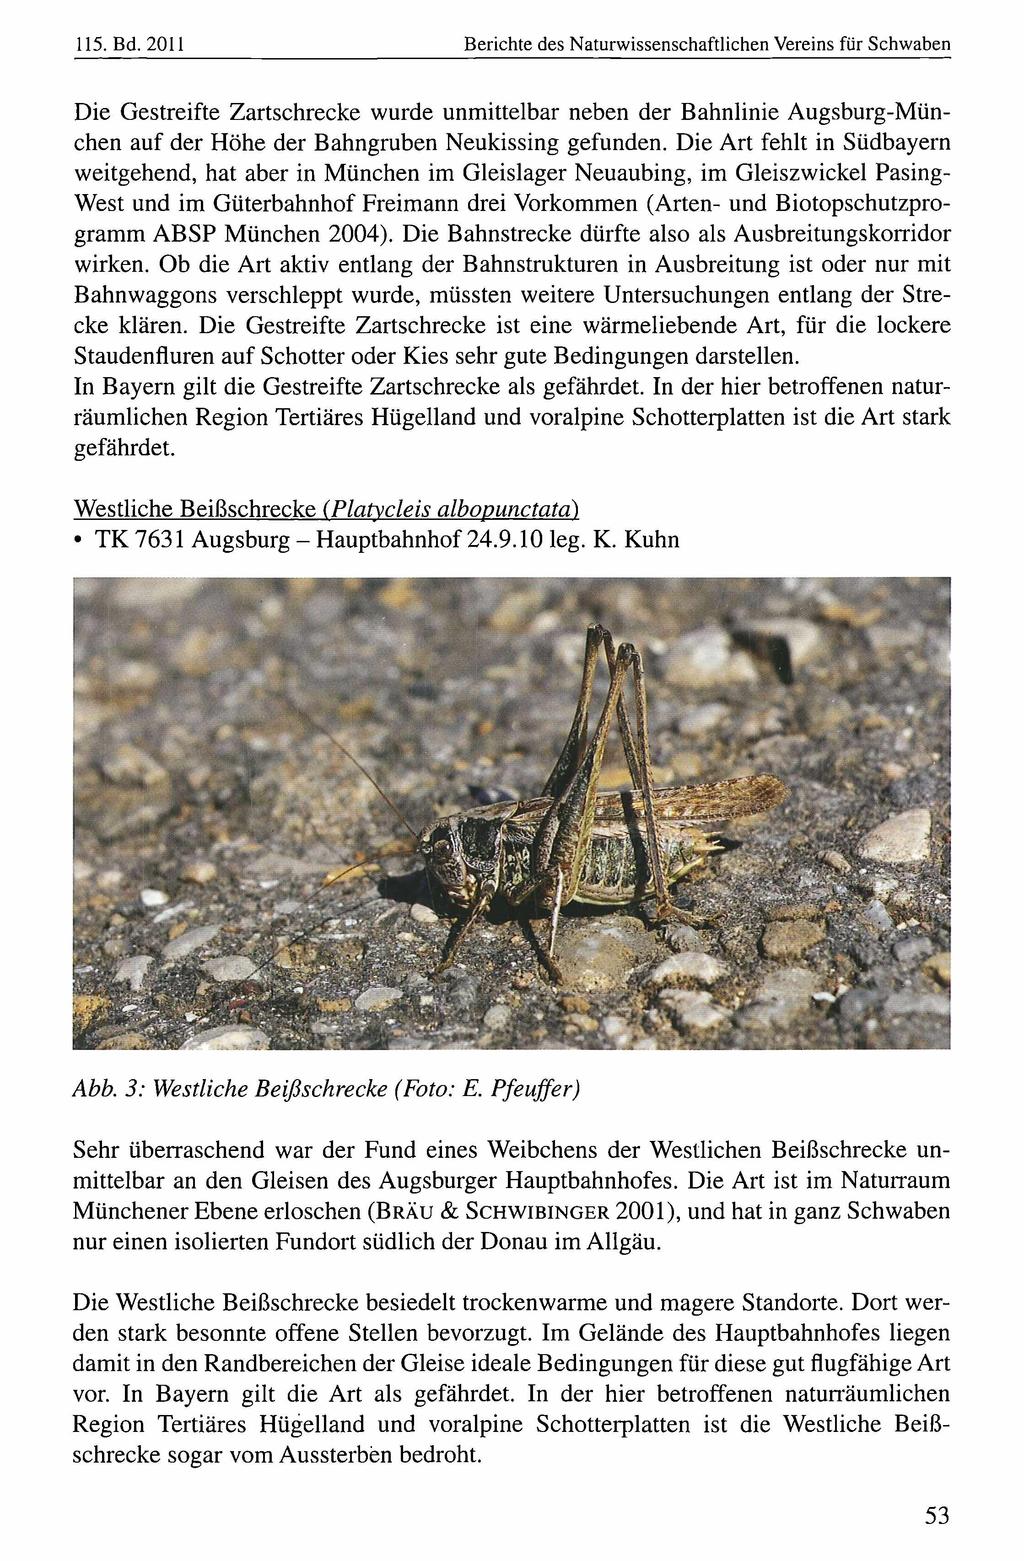 115. Bd. 2011 Naturwissenschaftlicher Verein für Berichte Schwaben, download unter www.biologiezentrum.